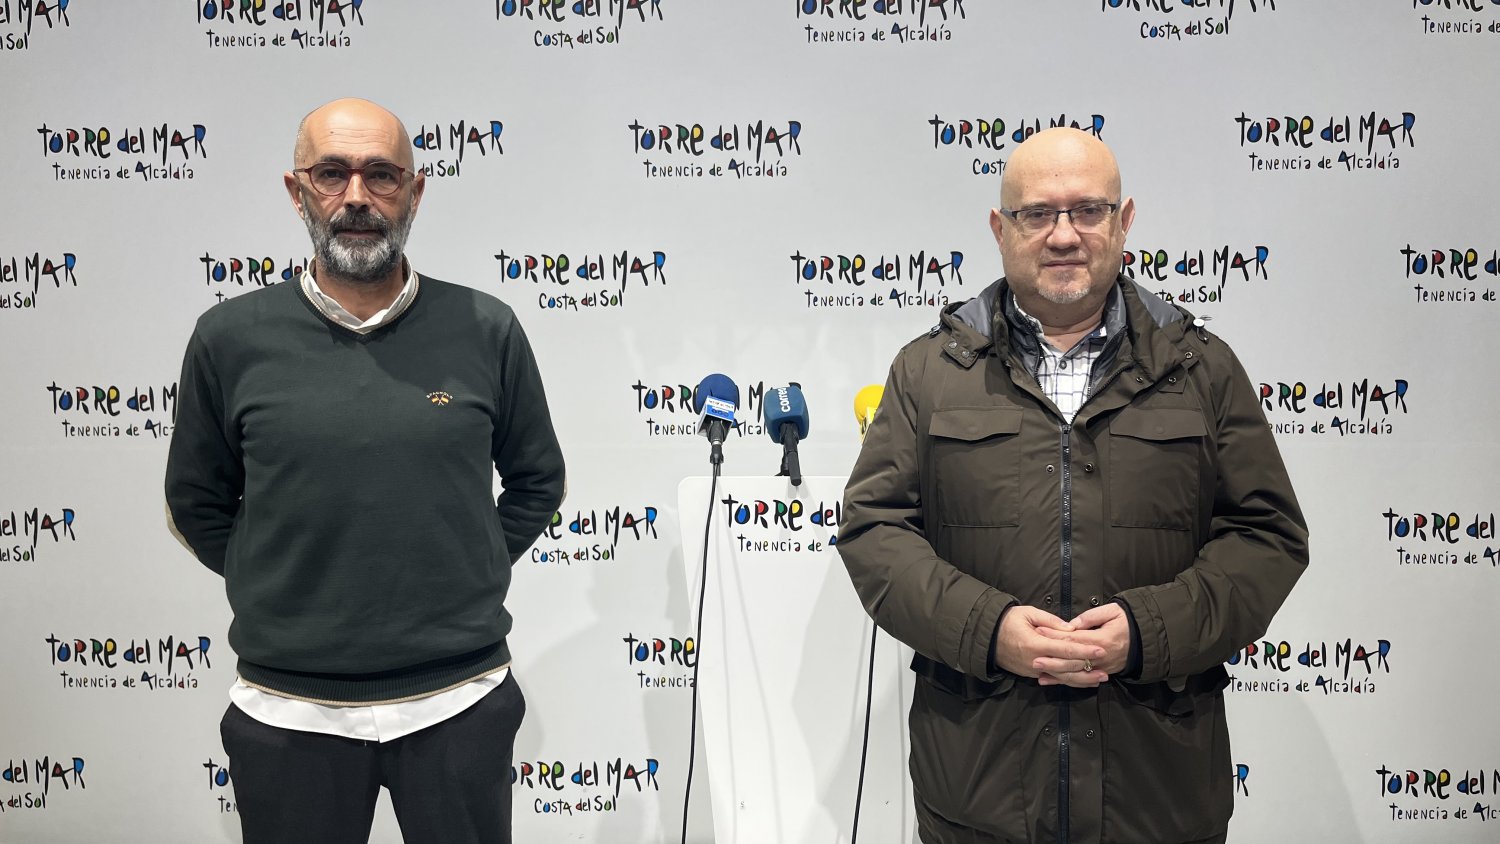 Vélez-Málaga anuncia la renovación de 52.000 metros de pintura vial en cinco pueblos del municipio